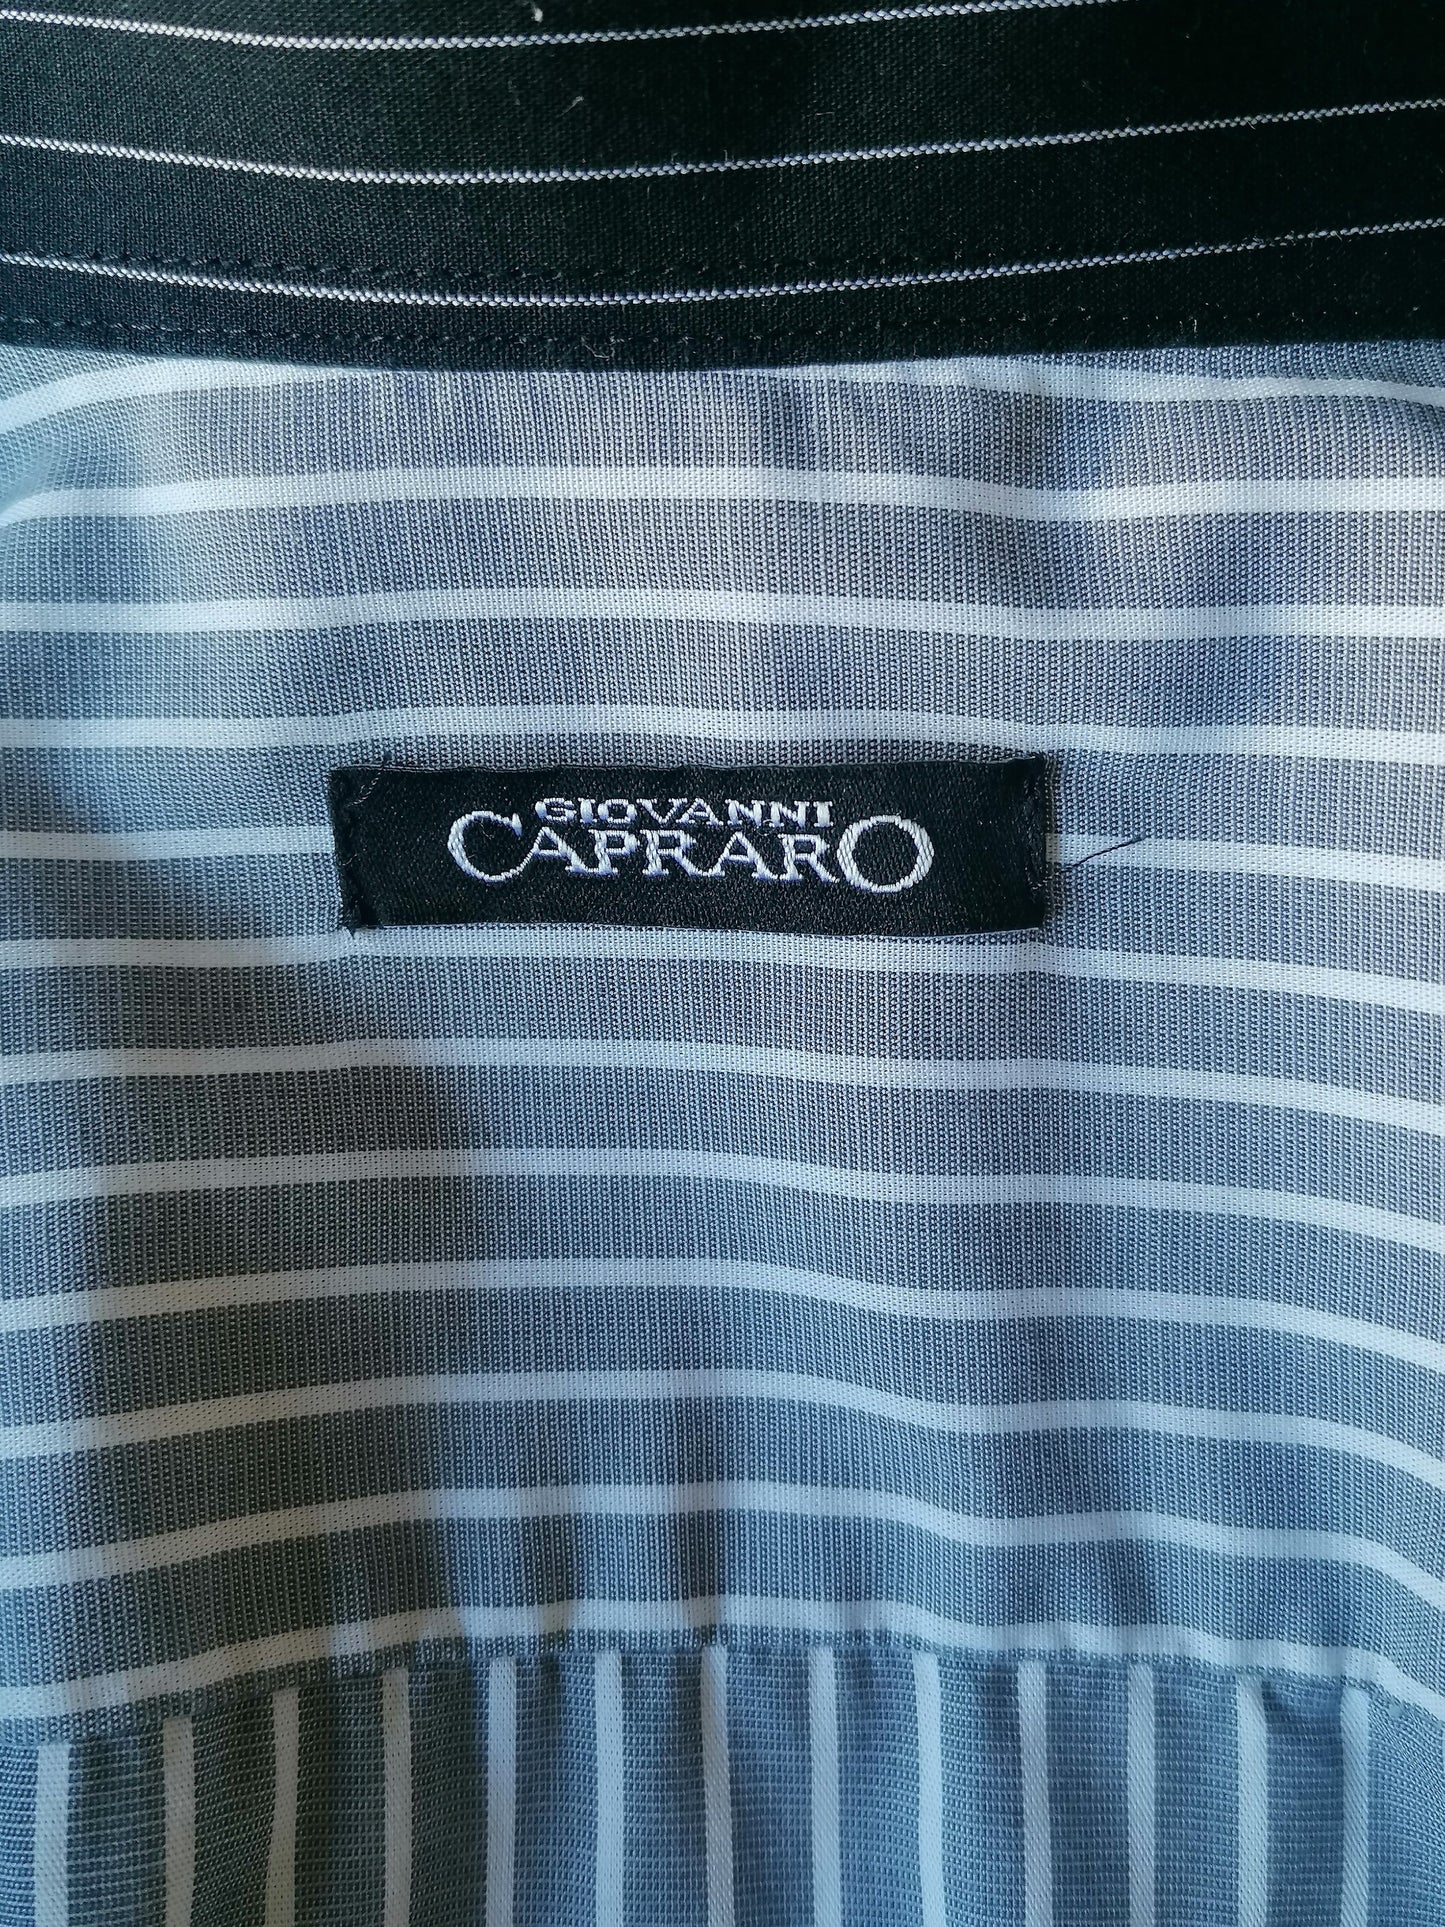 Giovanni Capraro overhemd. Grijs Wit gestreept. Maat M.